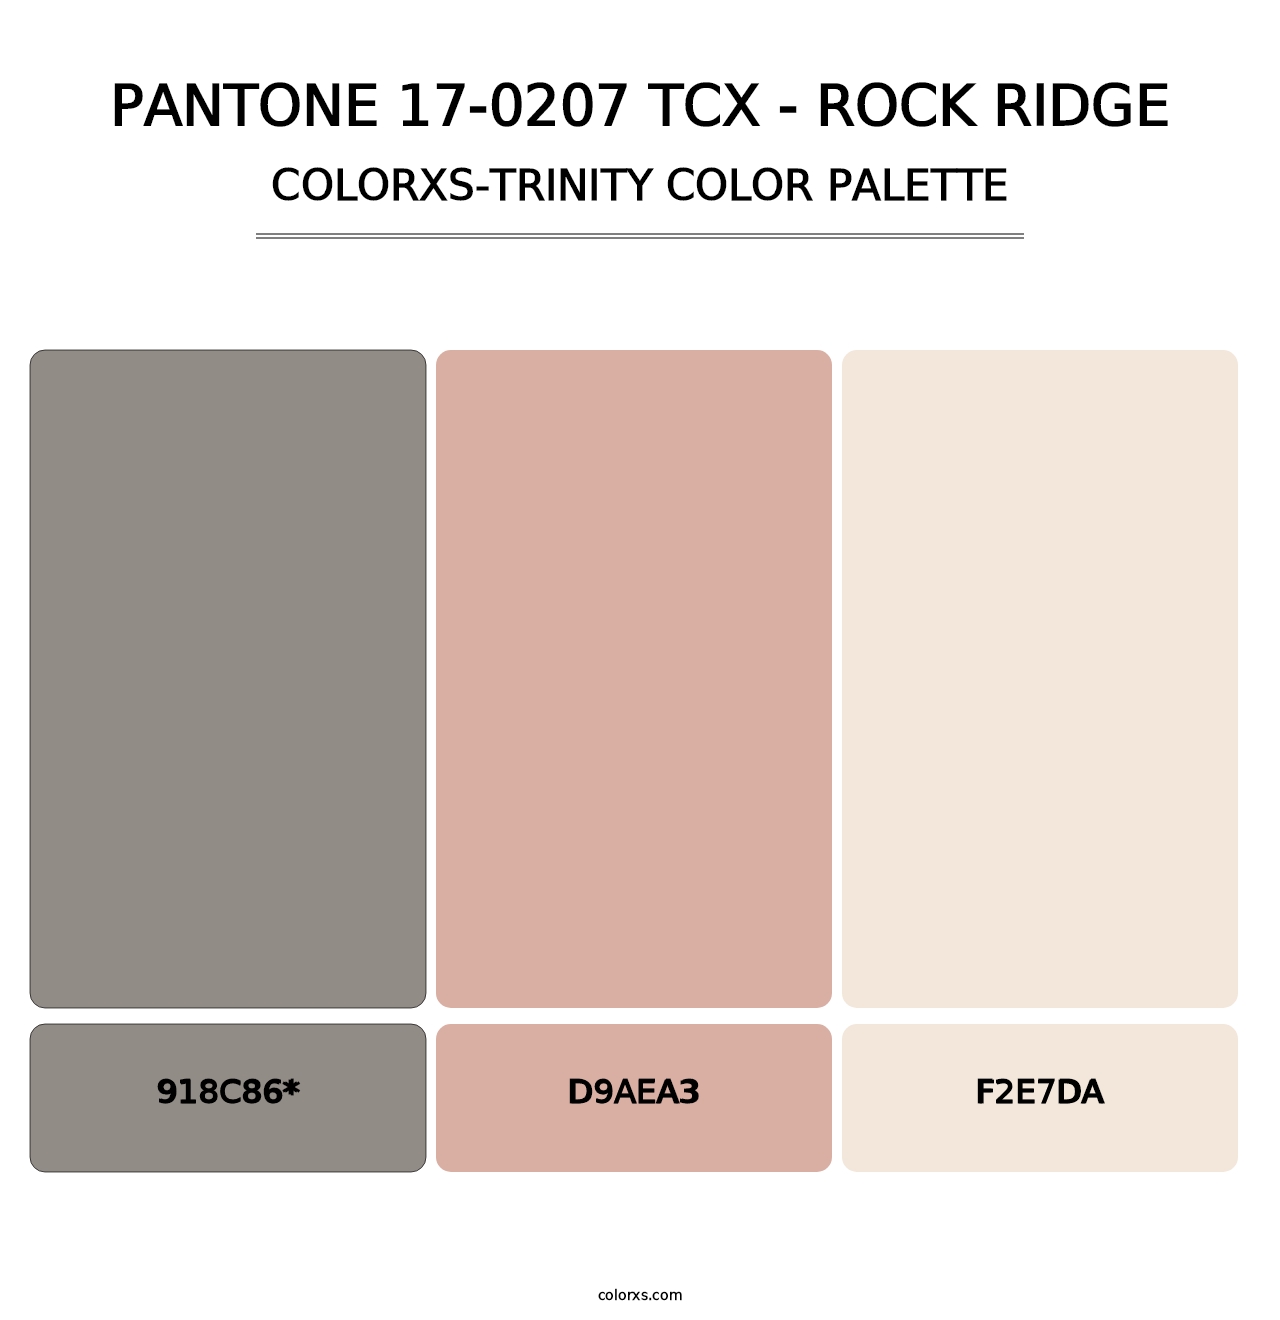 PANTONE 17-0207 TCX - Rock Ridge - Colorxs Trinity Palette